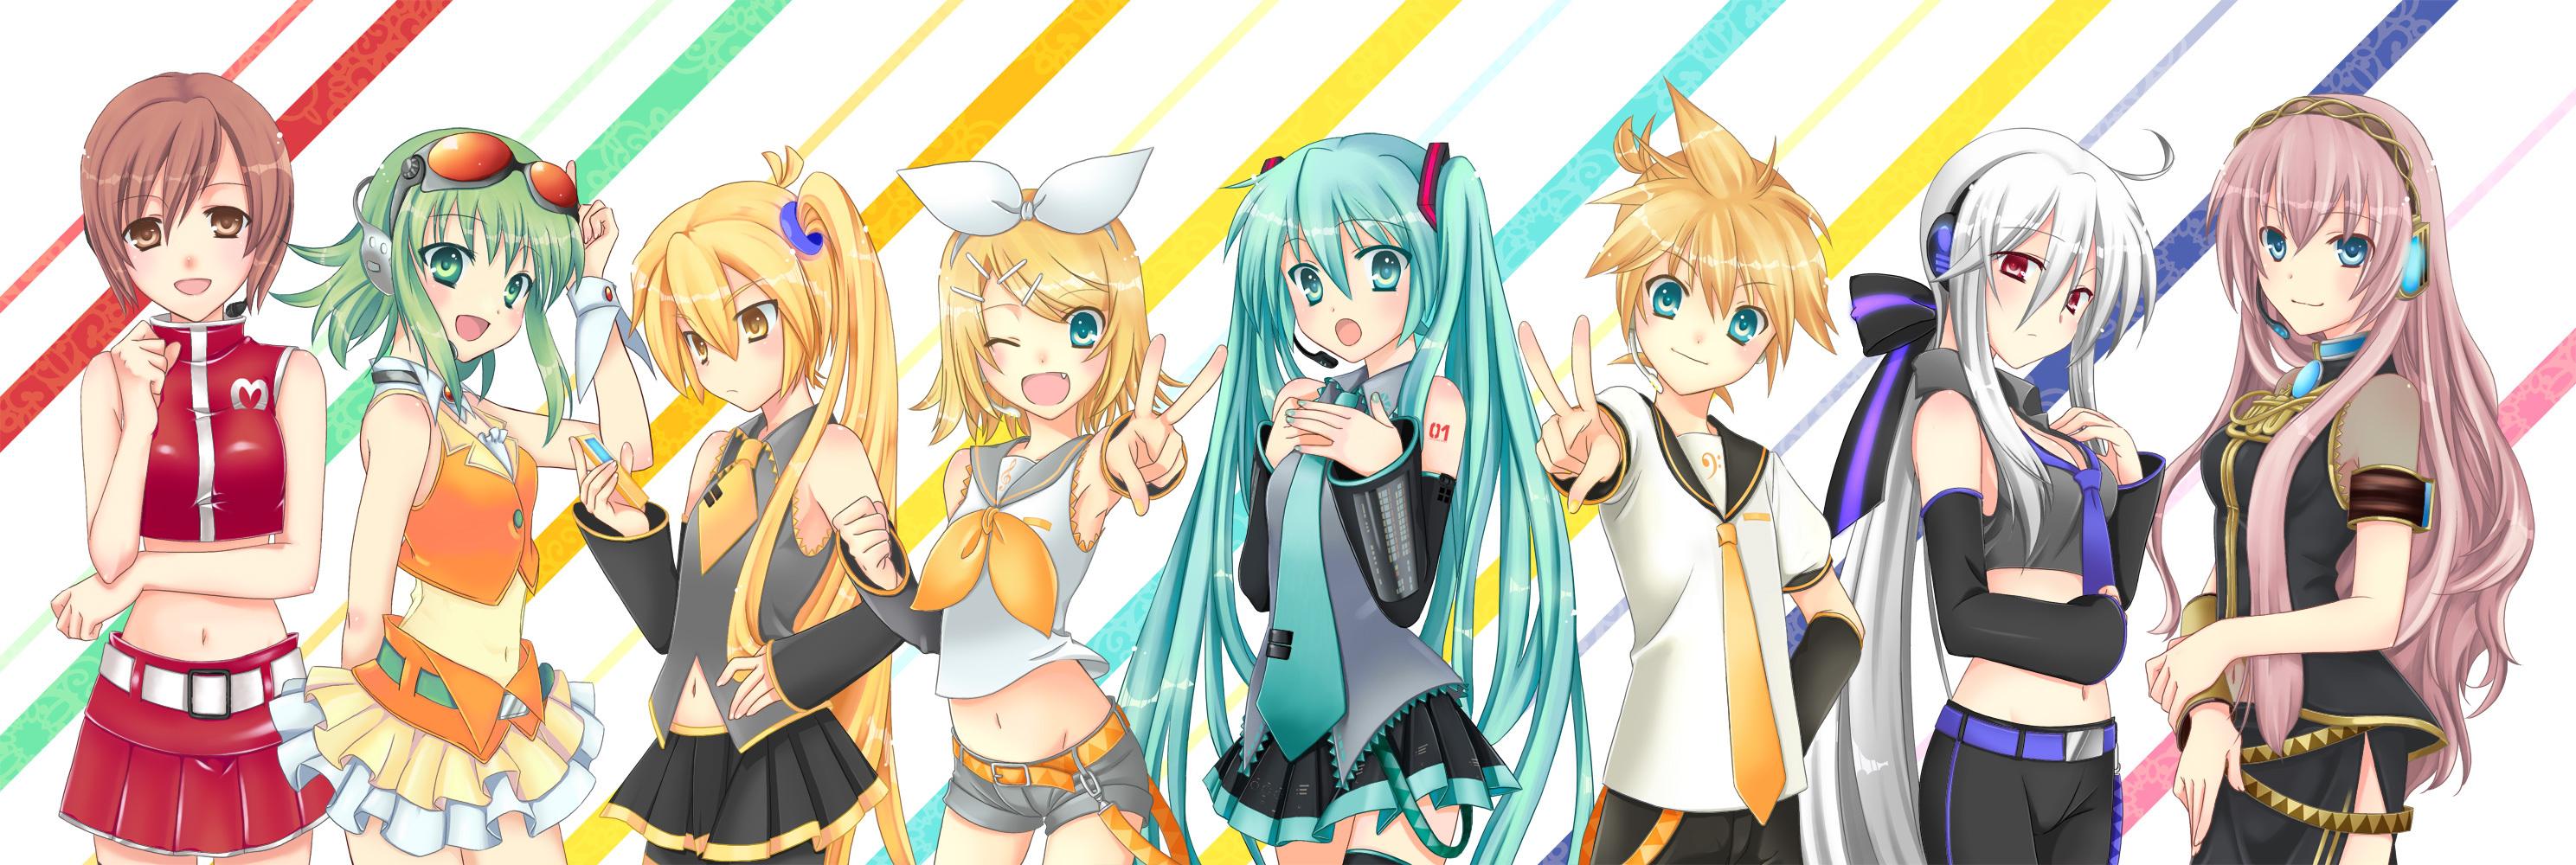 Les personnages de 'Vocaloid'